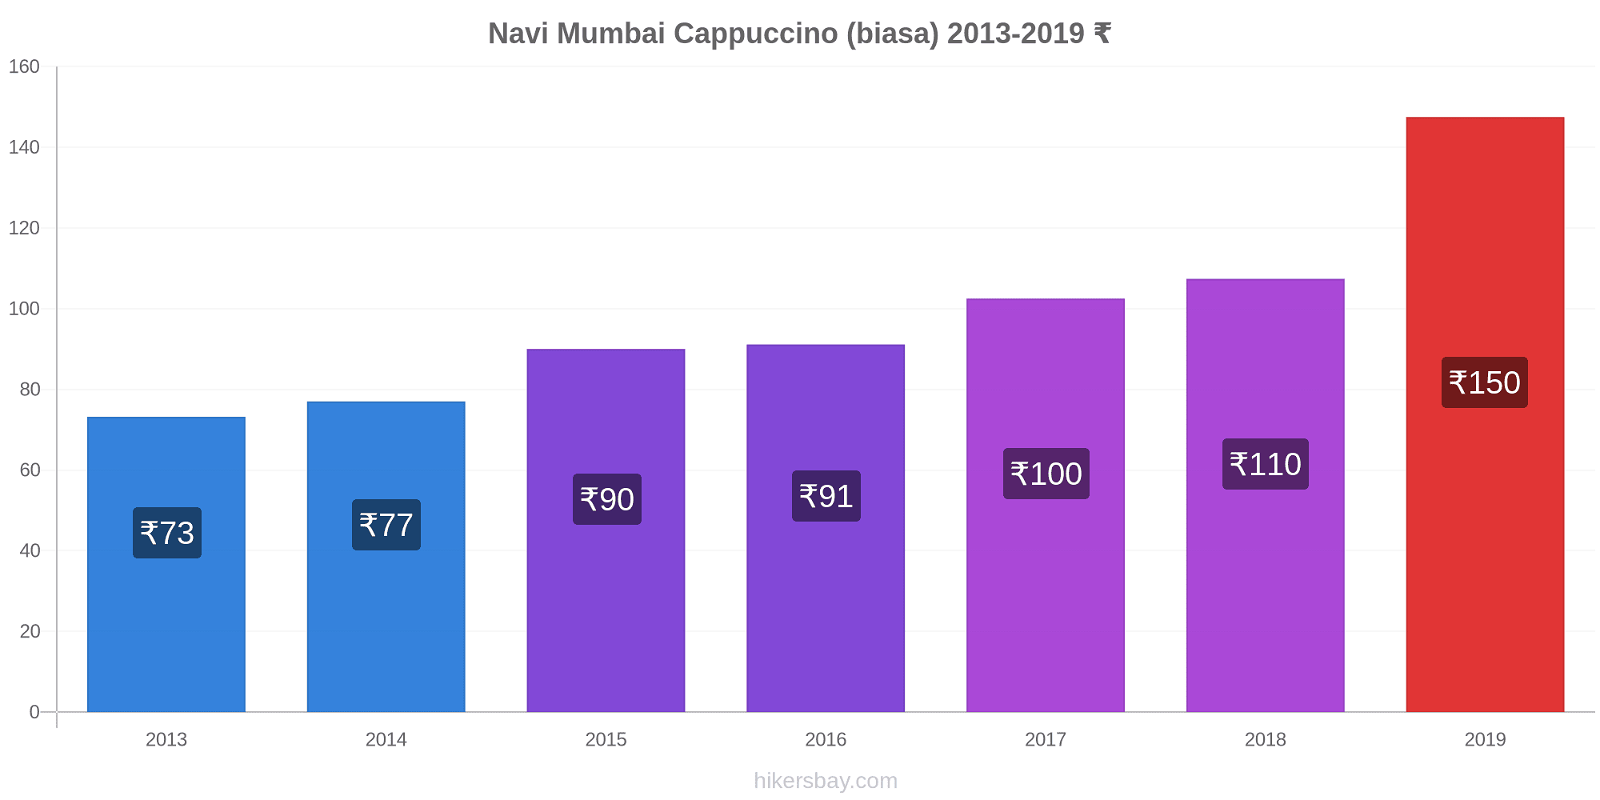 Navi Mumbai perubahan harga Cappuccino (biasa) hikersbay.com